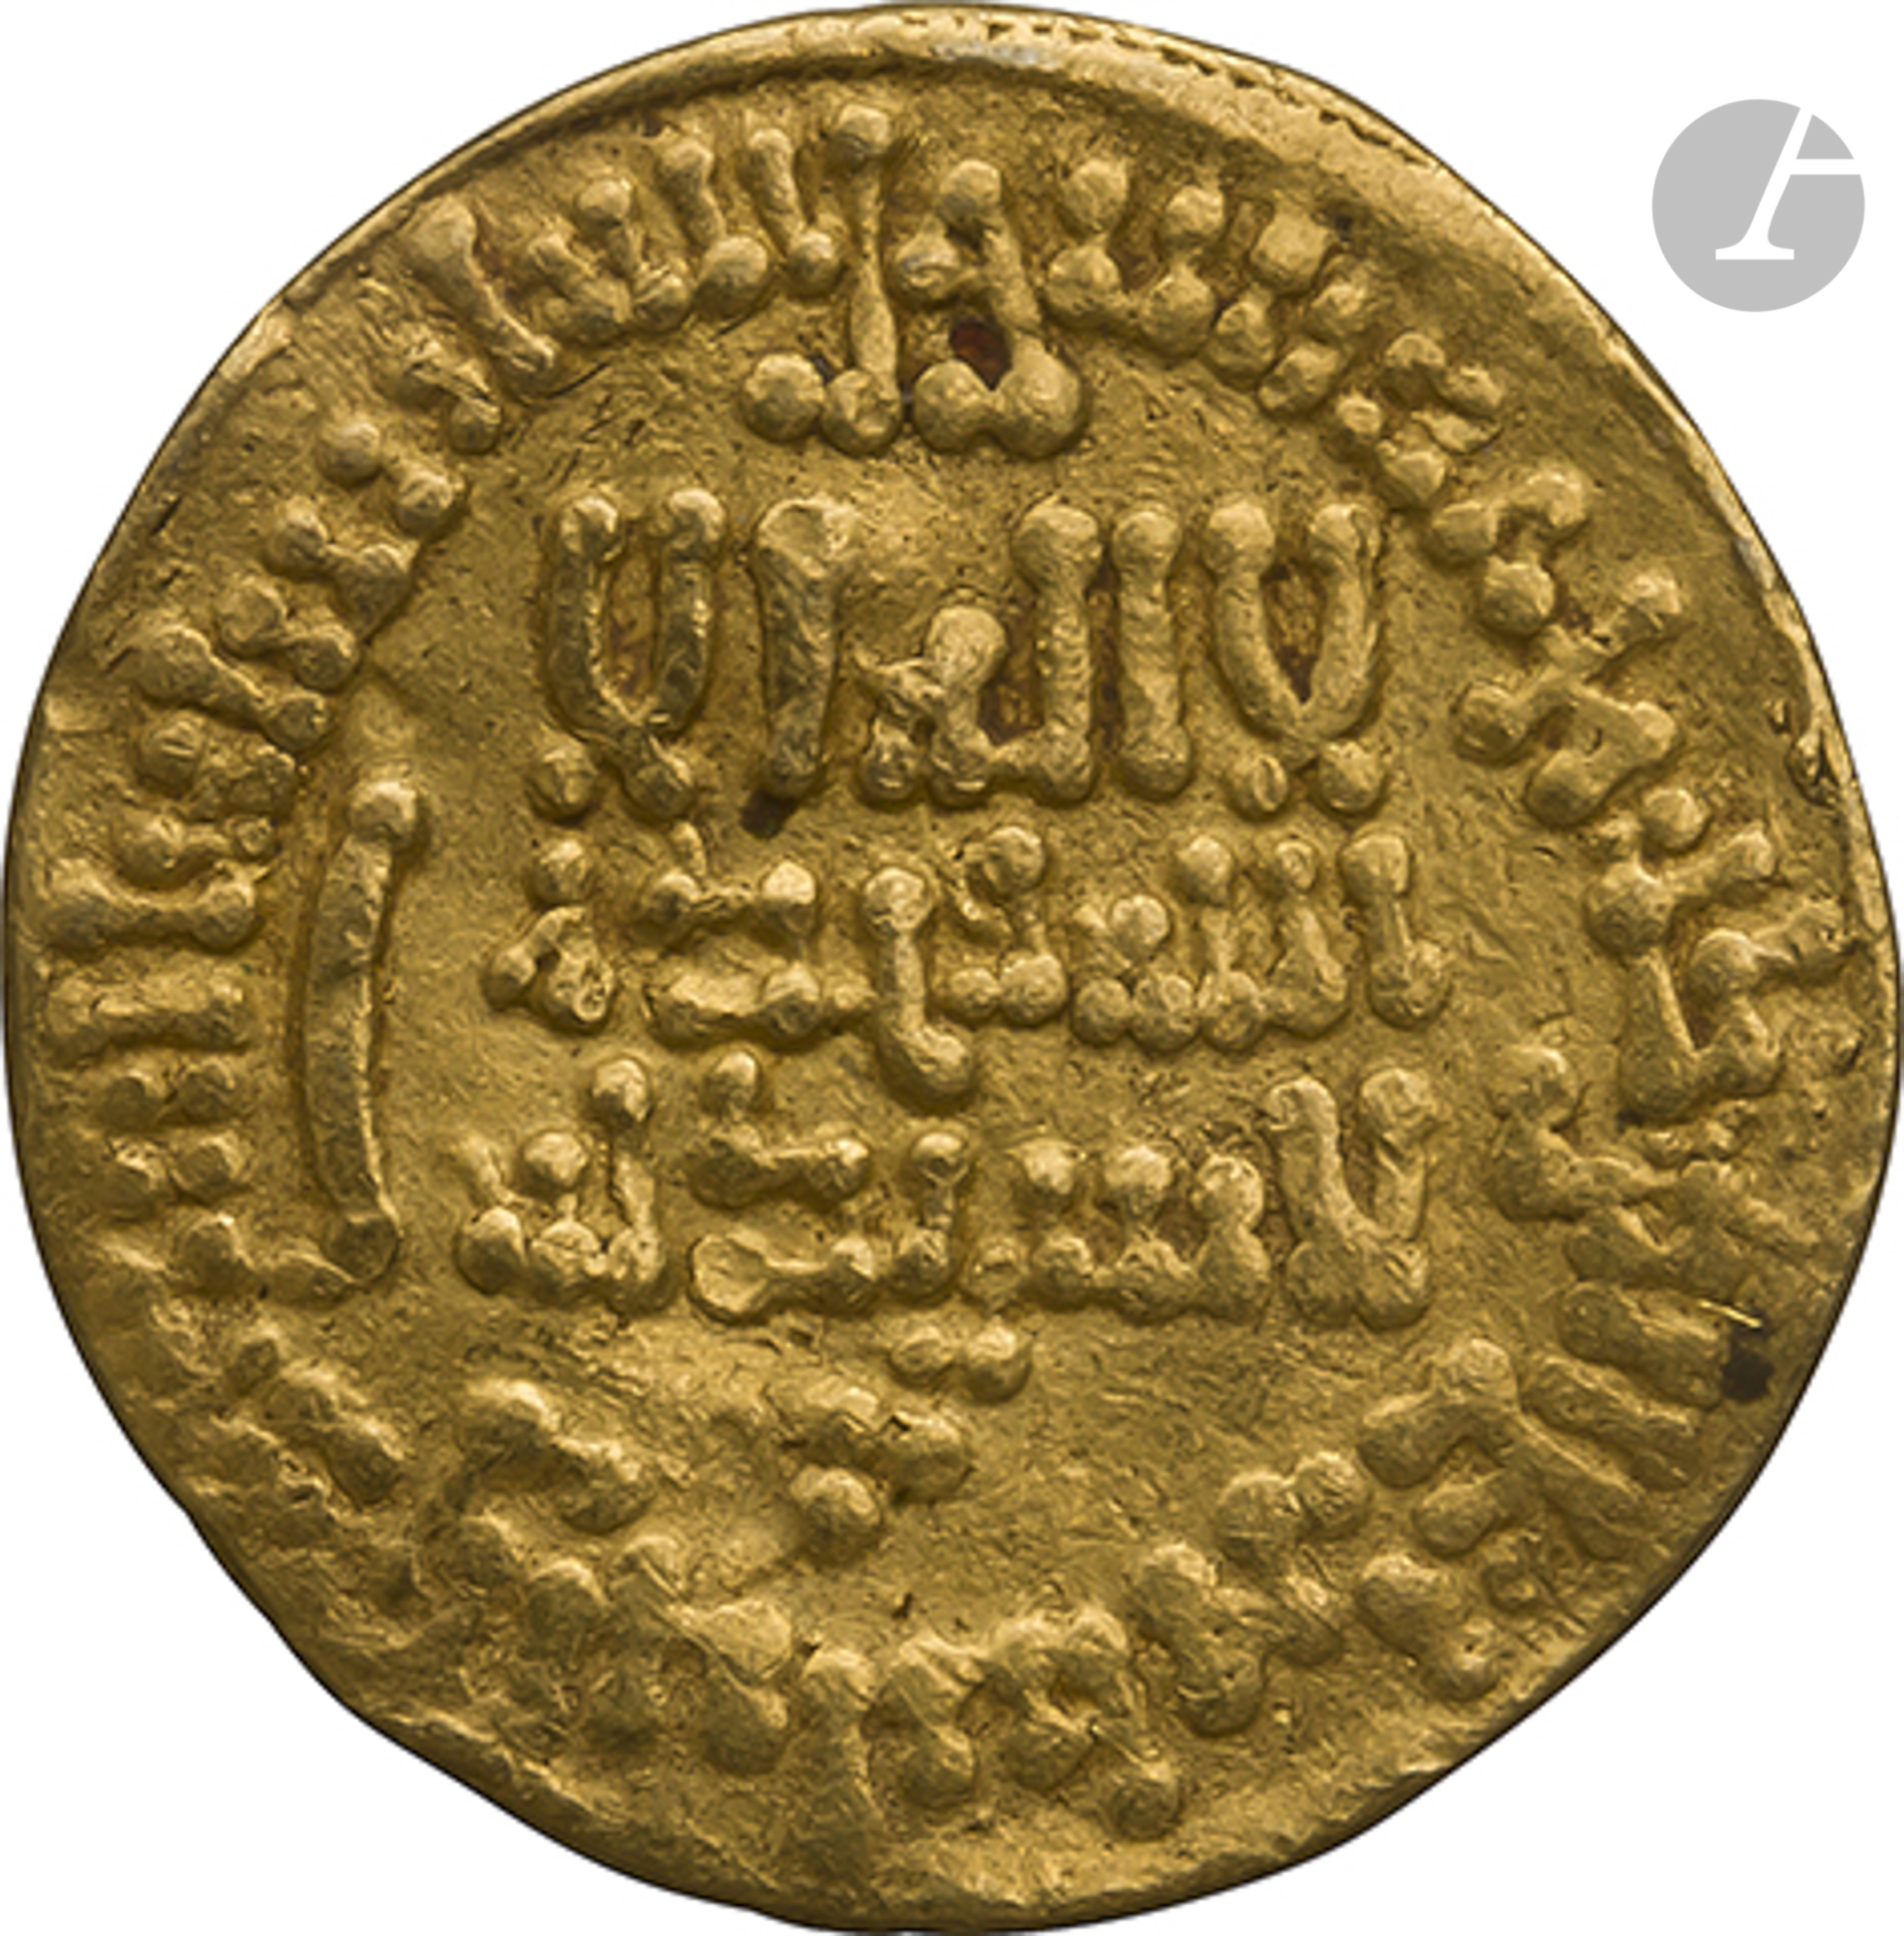 AGHLABIDES. Règne de Muhammad I (226-242 H / 840-856). Dinar d'or daté 236 H / 850, et au nom de l' - Image 2 of 2